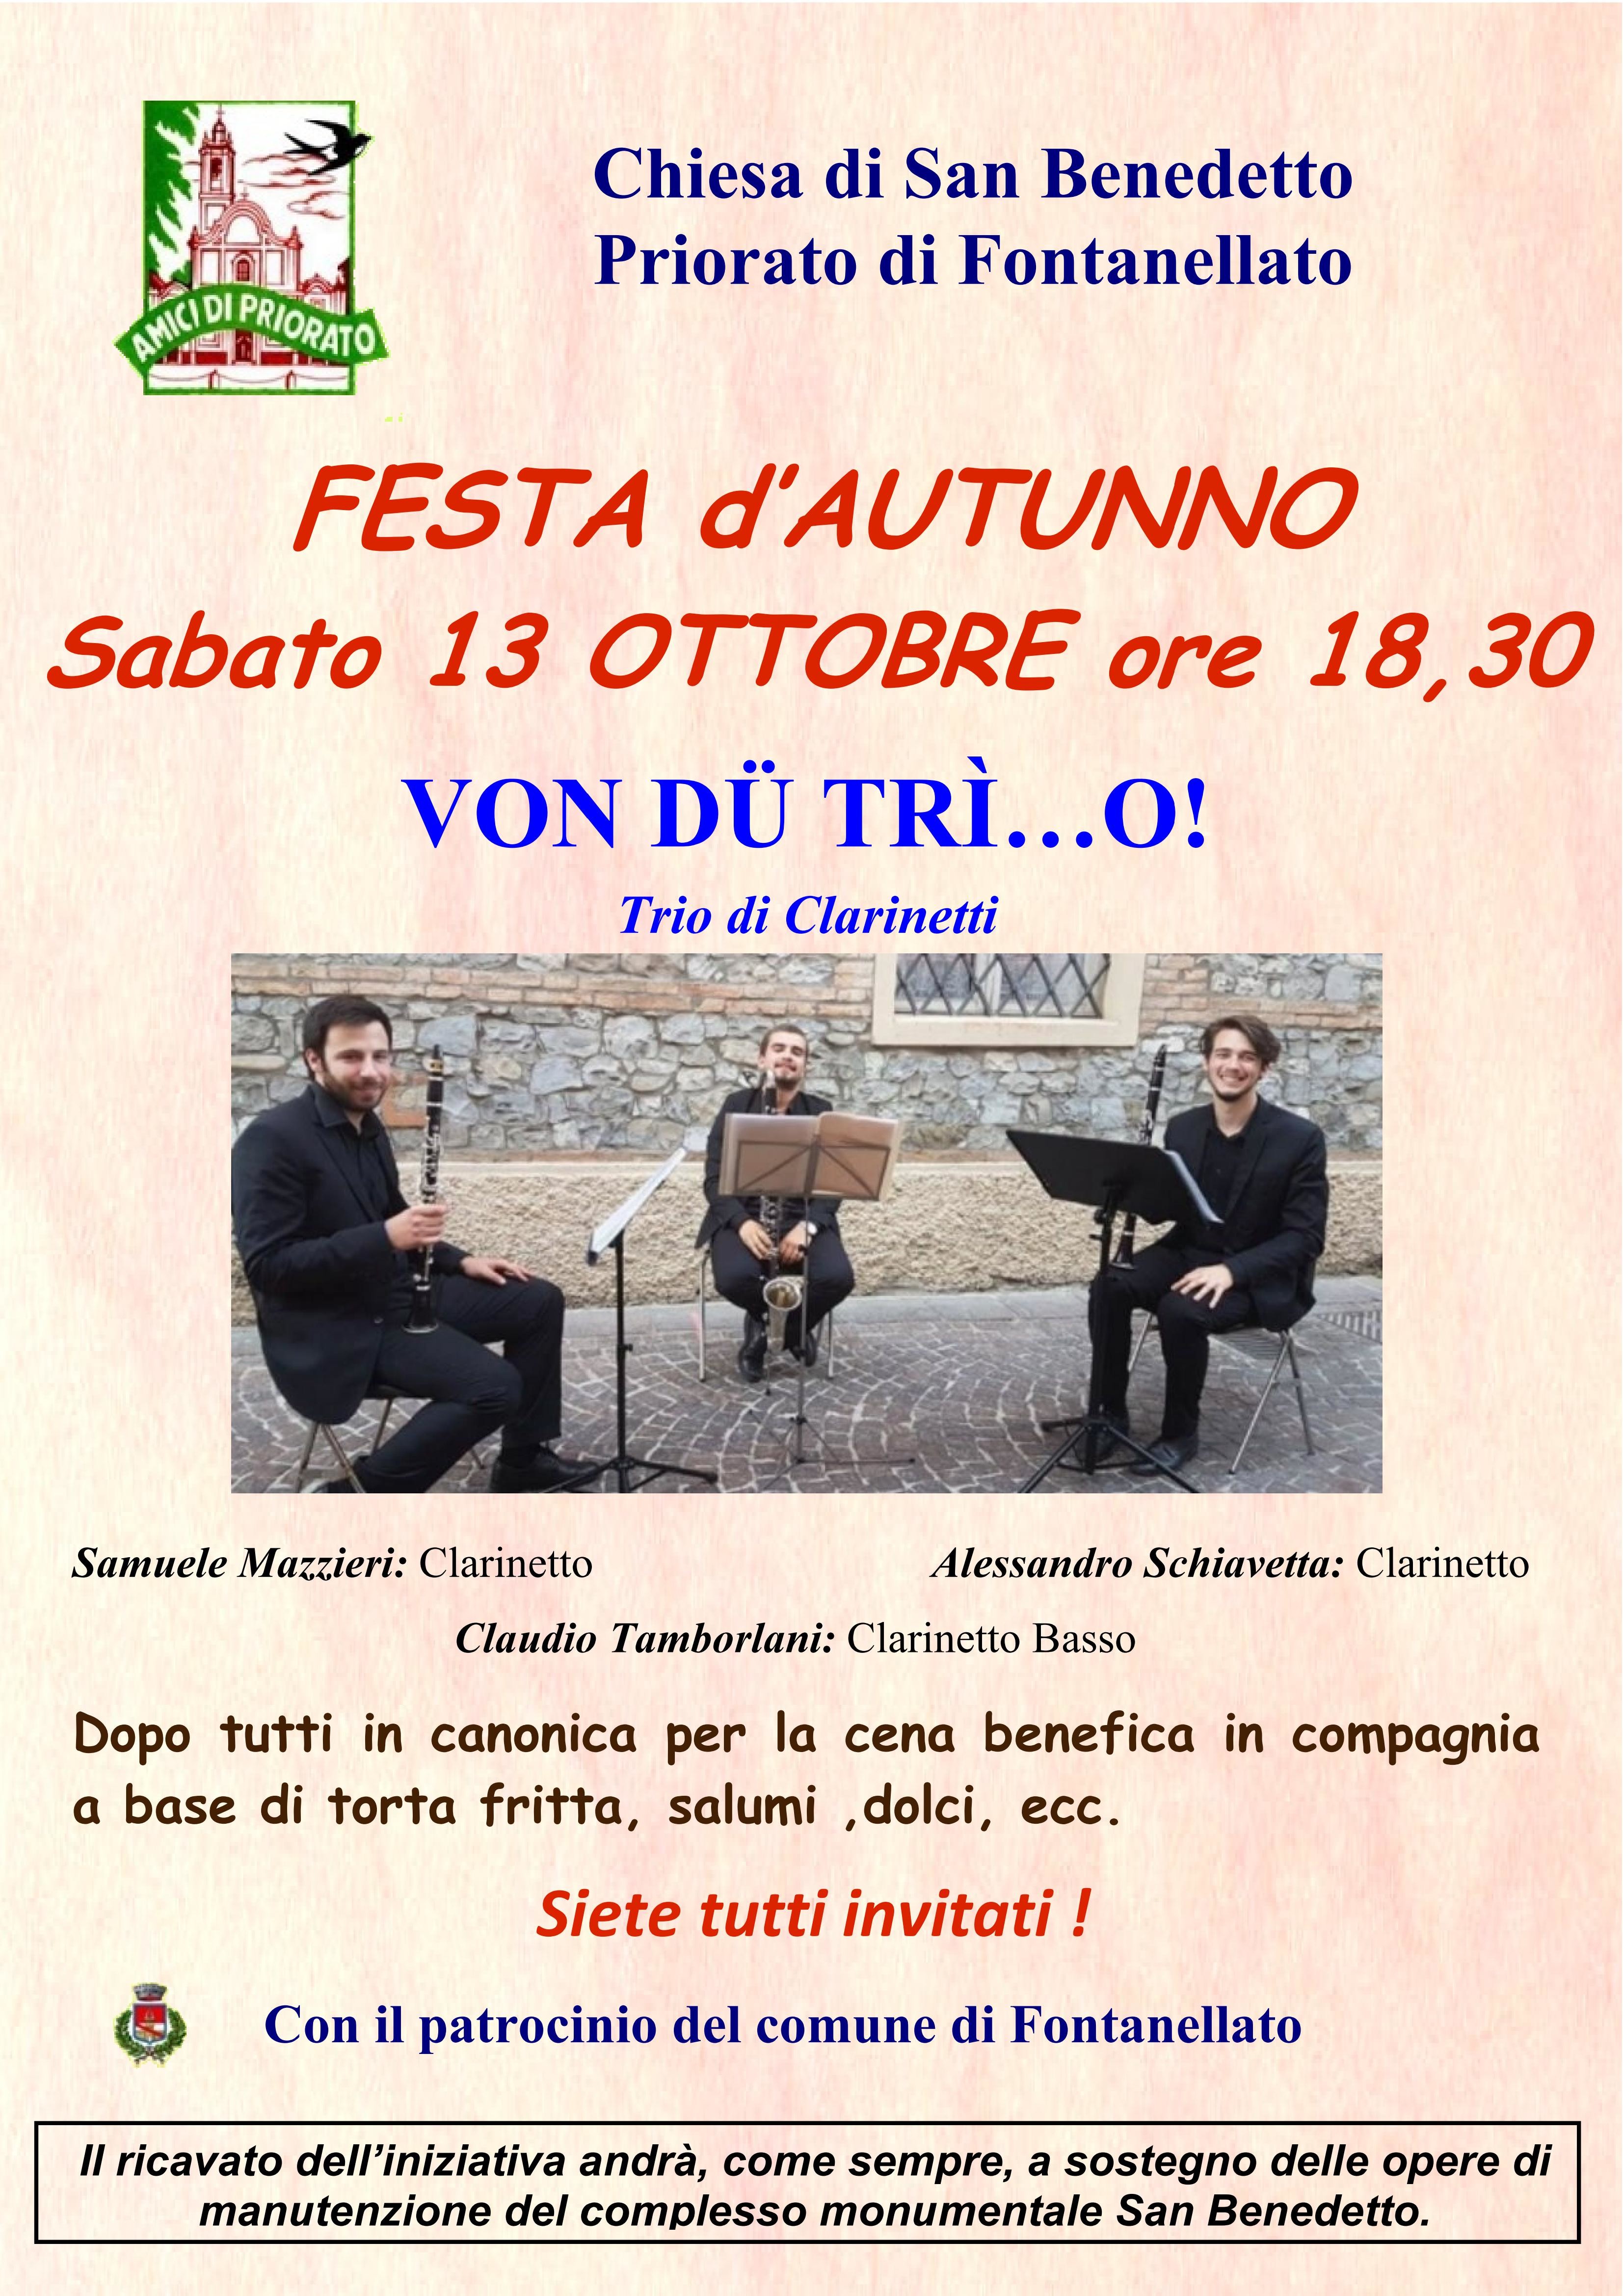 Alla festa d'autunno a Priorato il  Trio di Clarinetti  VON DÜ TRÌ…O